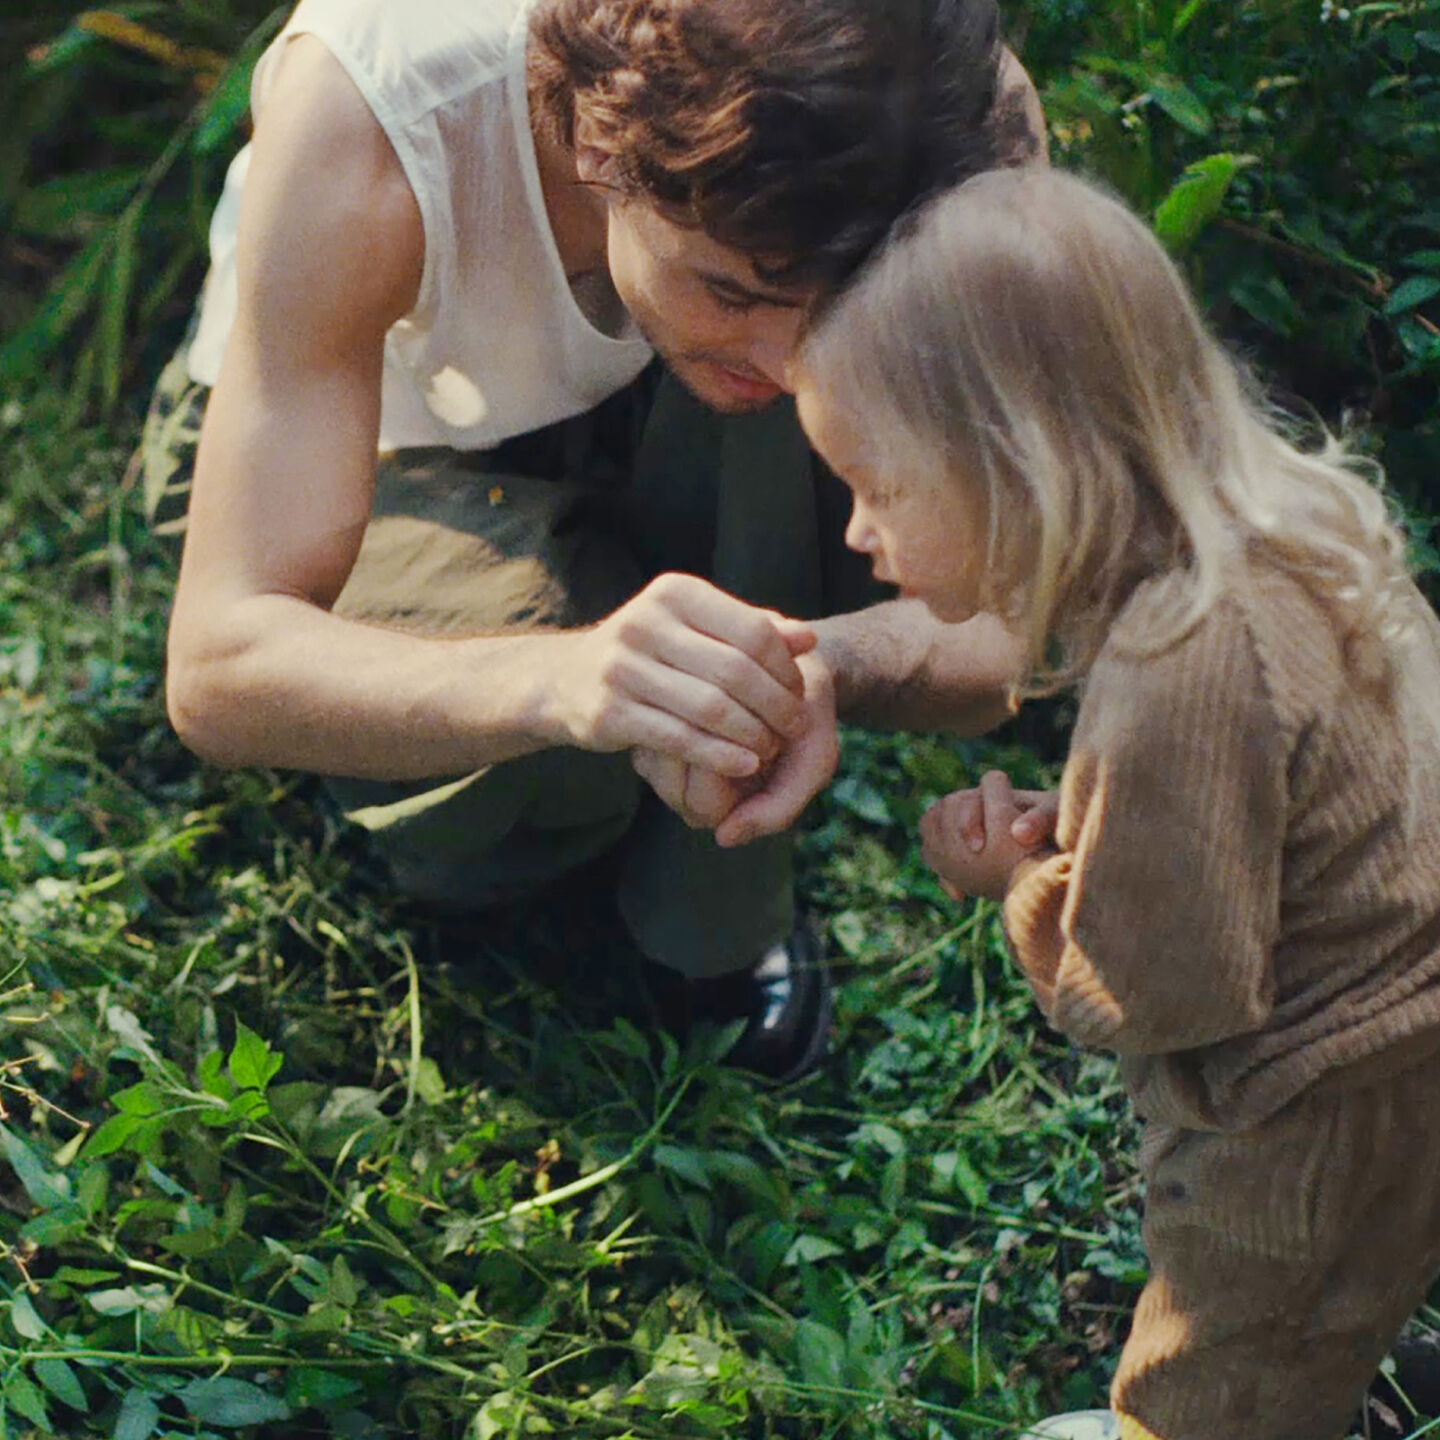 Un papá y su hija se agachan en un jardín salvaje con mucha vegetación. Él le muestra algo que tiene entre sus manos.